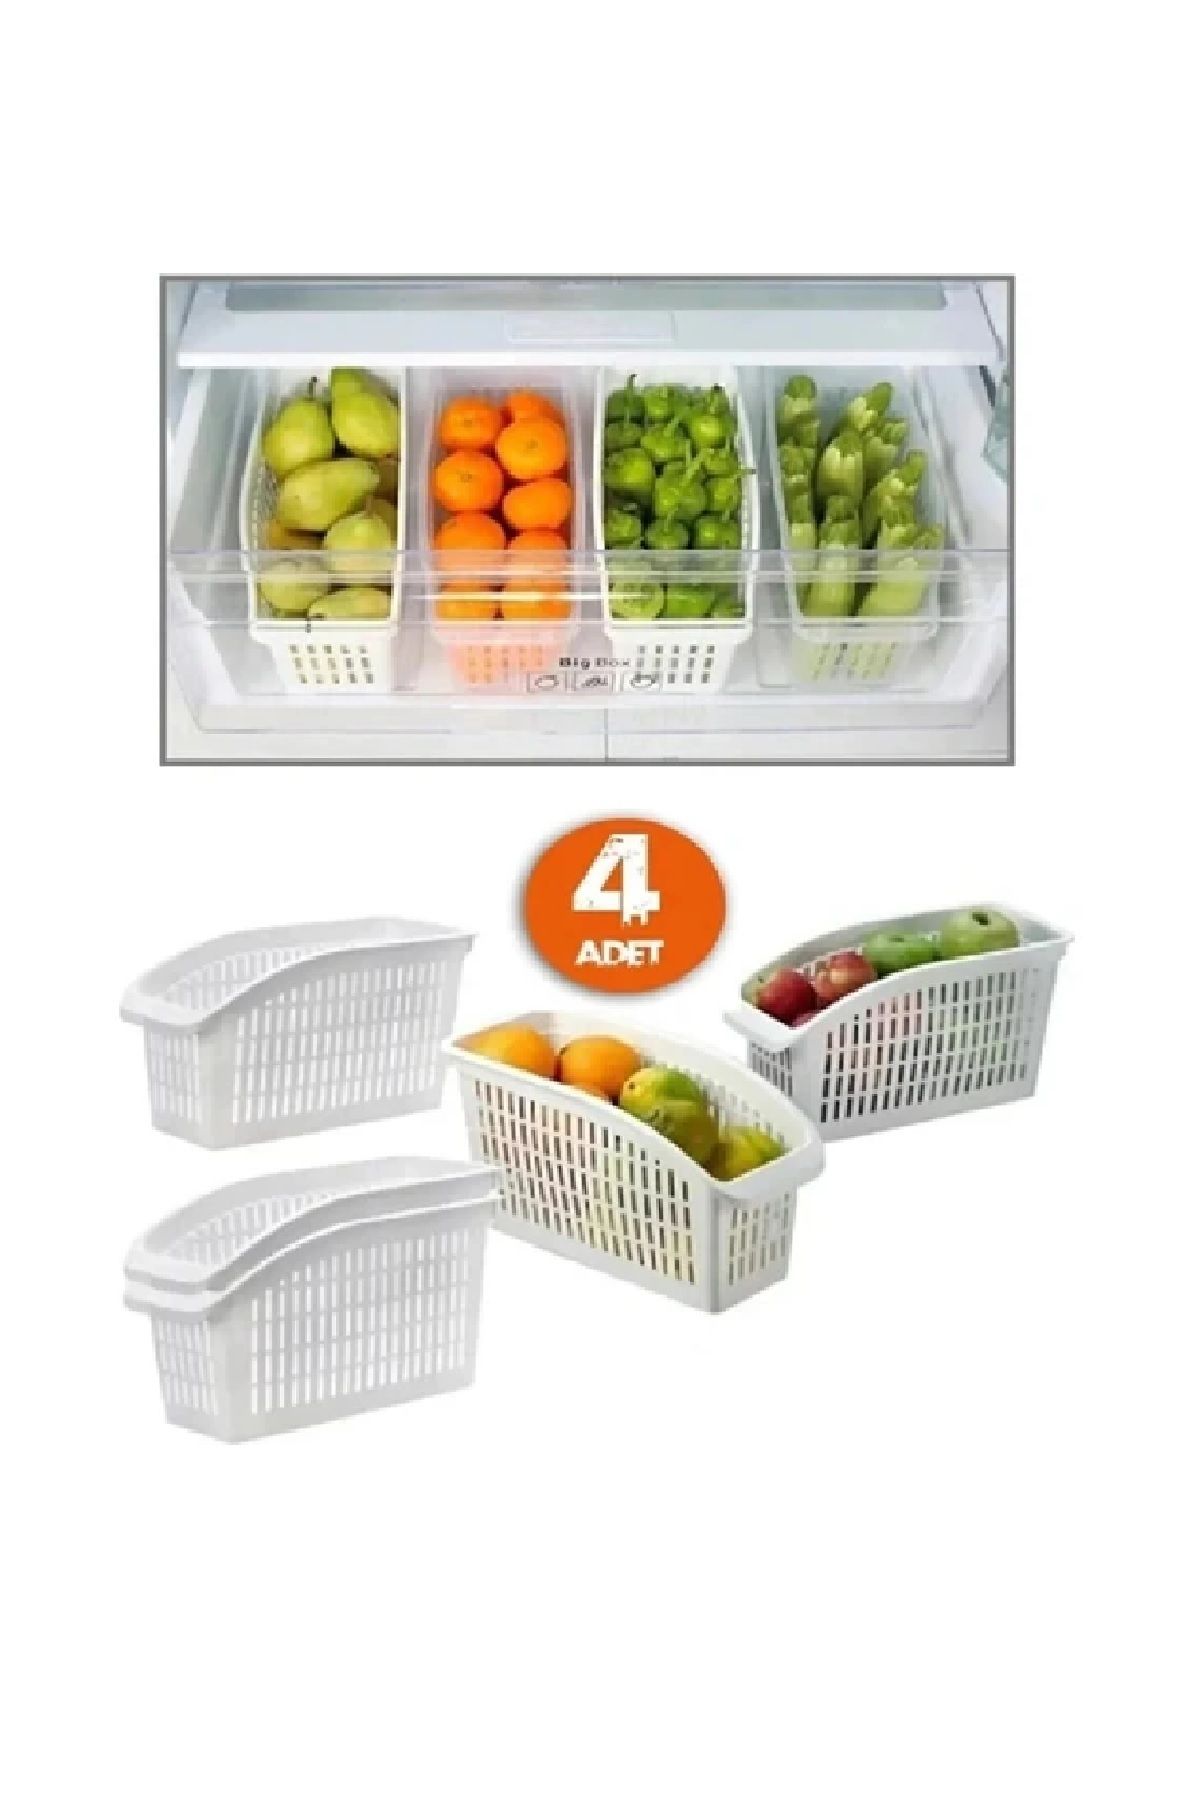 Kitchen Dream 4 Adet Buzdolabı Içi Beyaz Sebze Meyve Düzenleyici Organizer